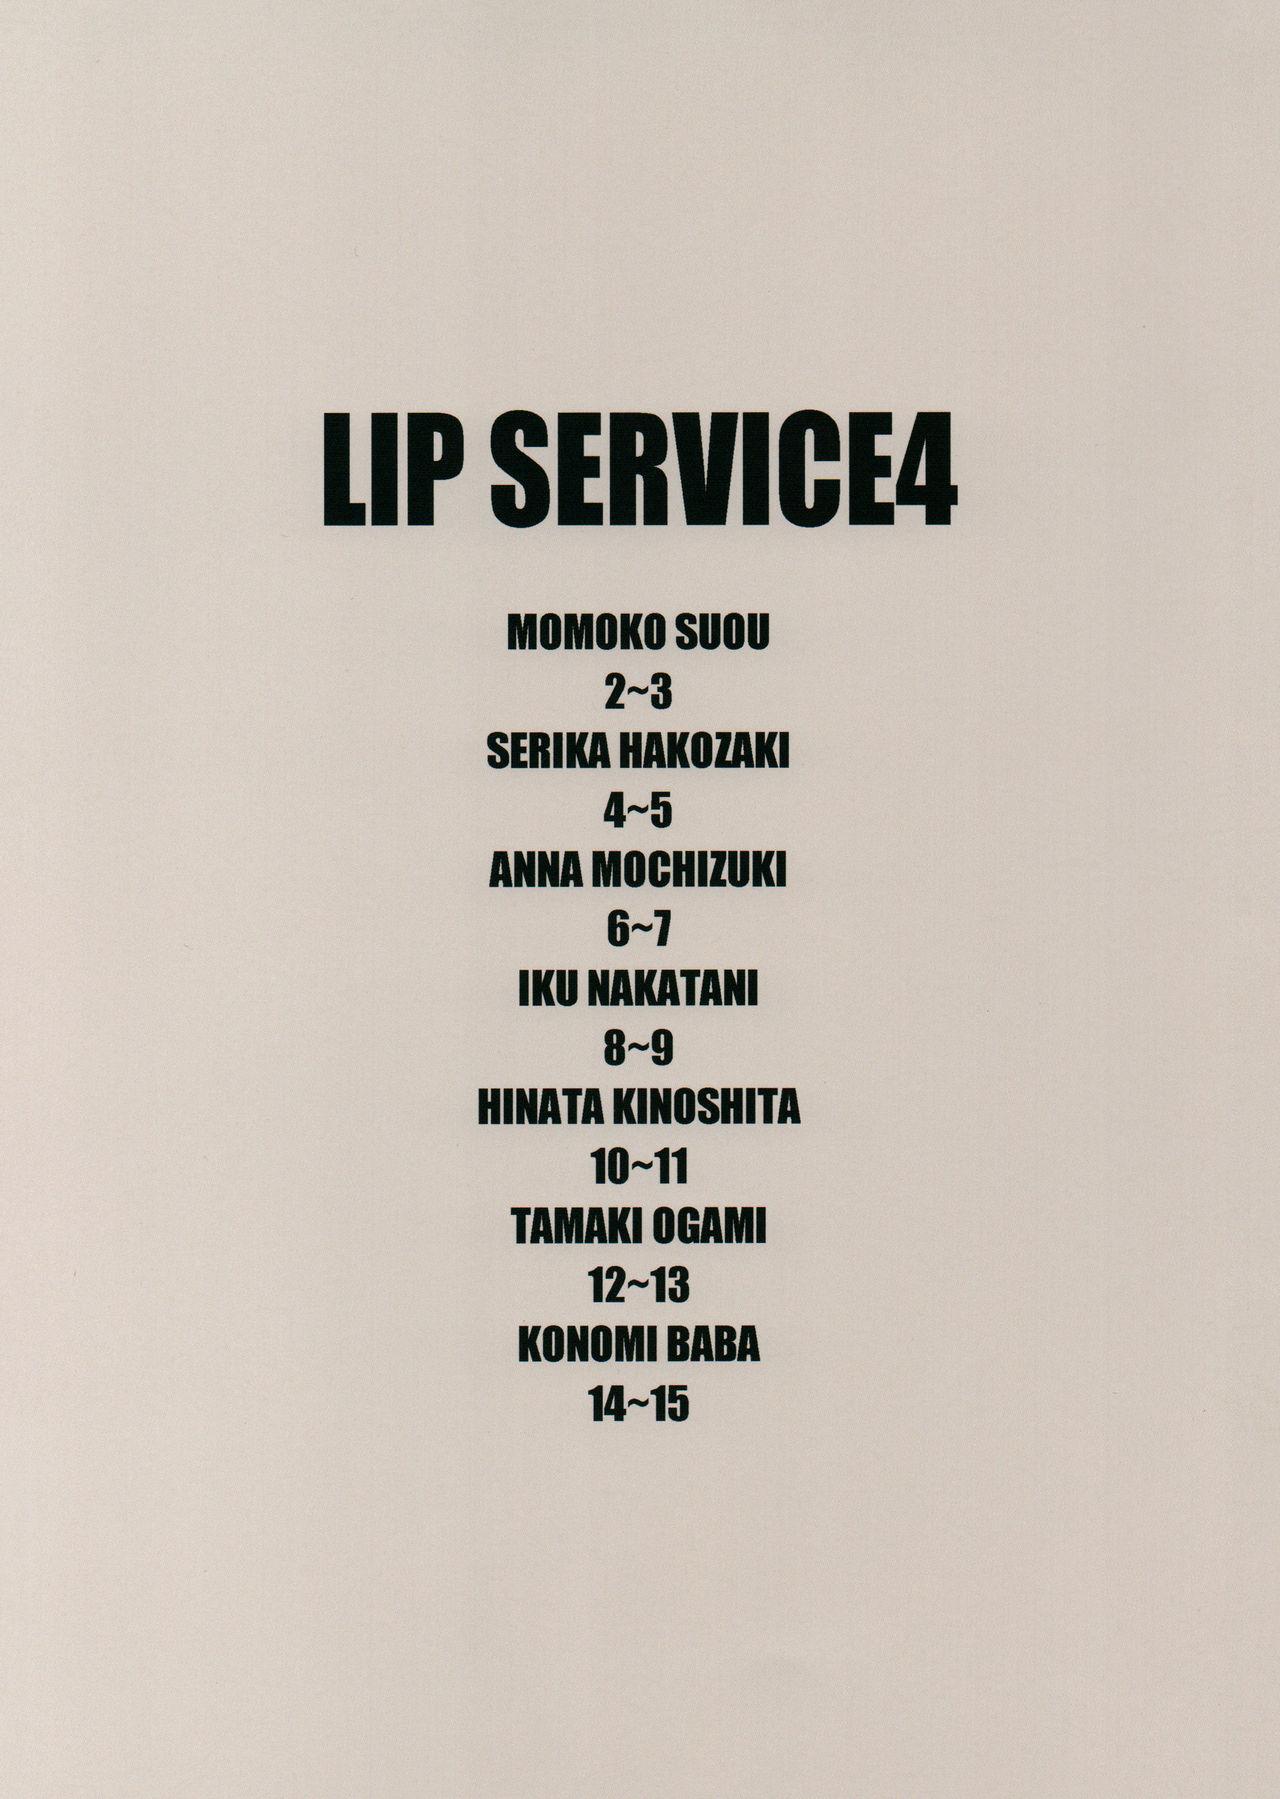 LIP SERVICE 4 1